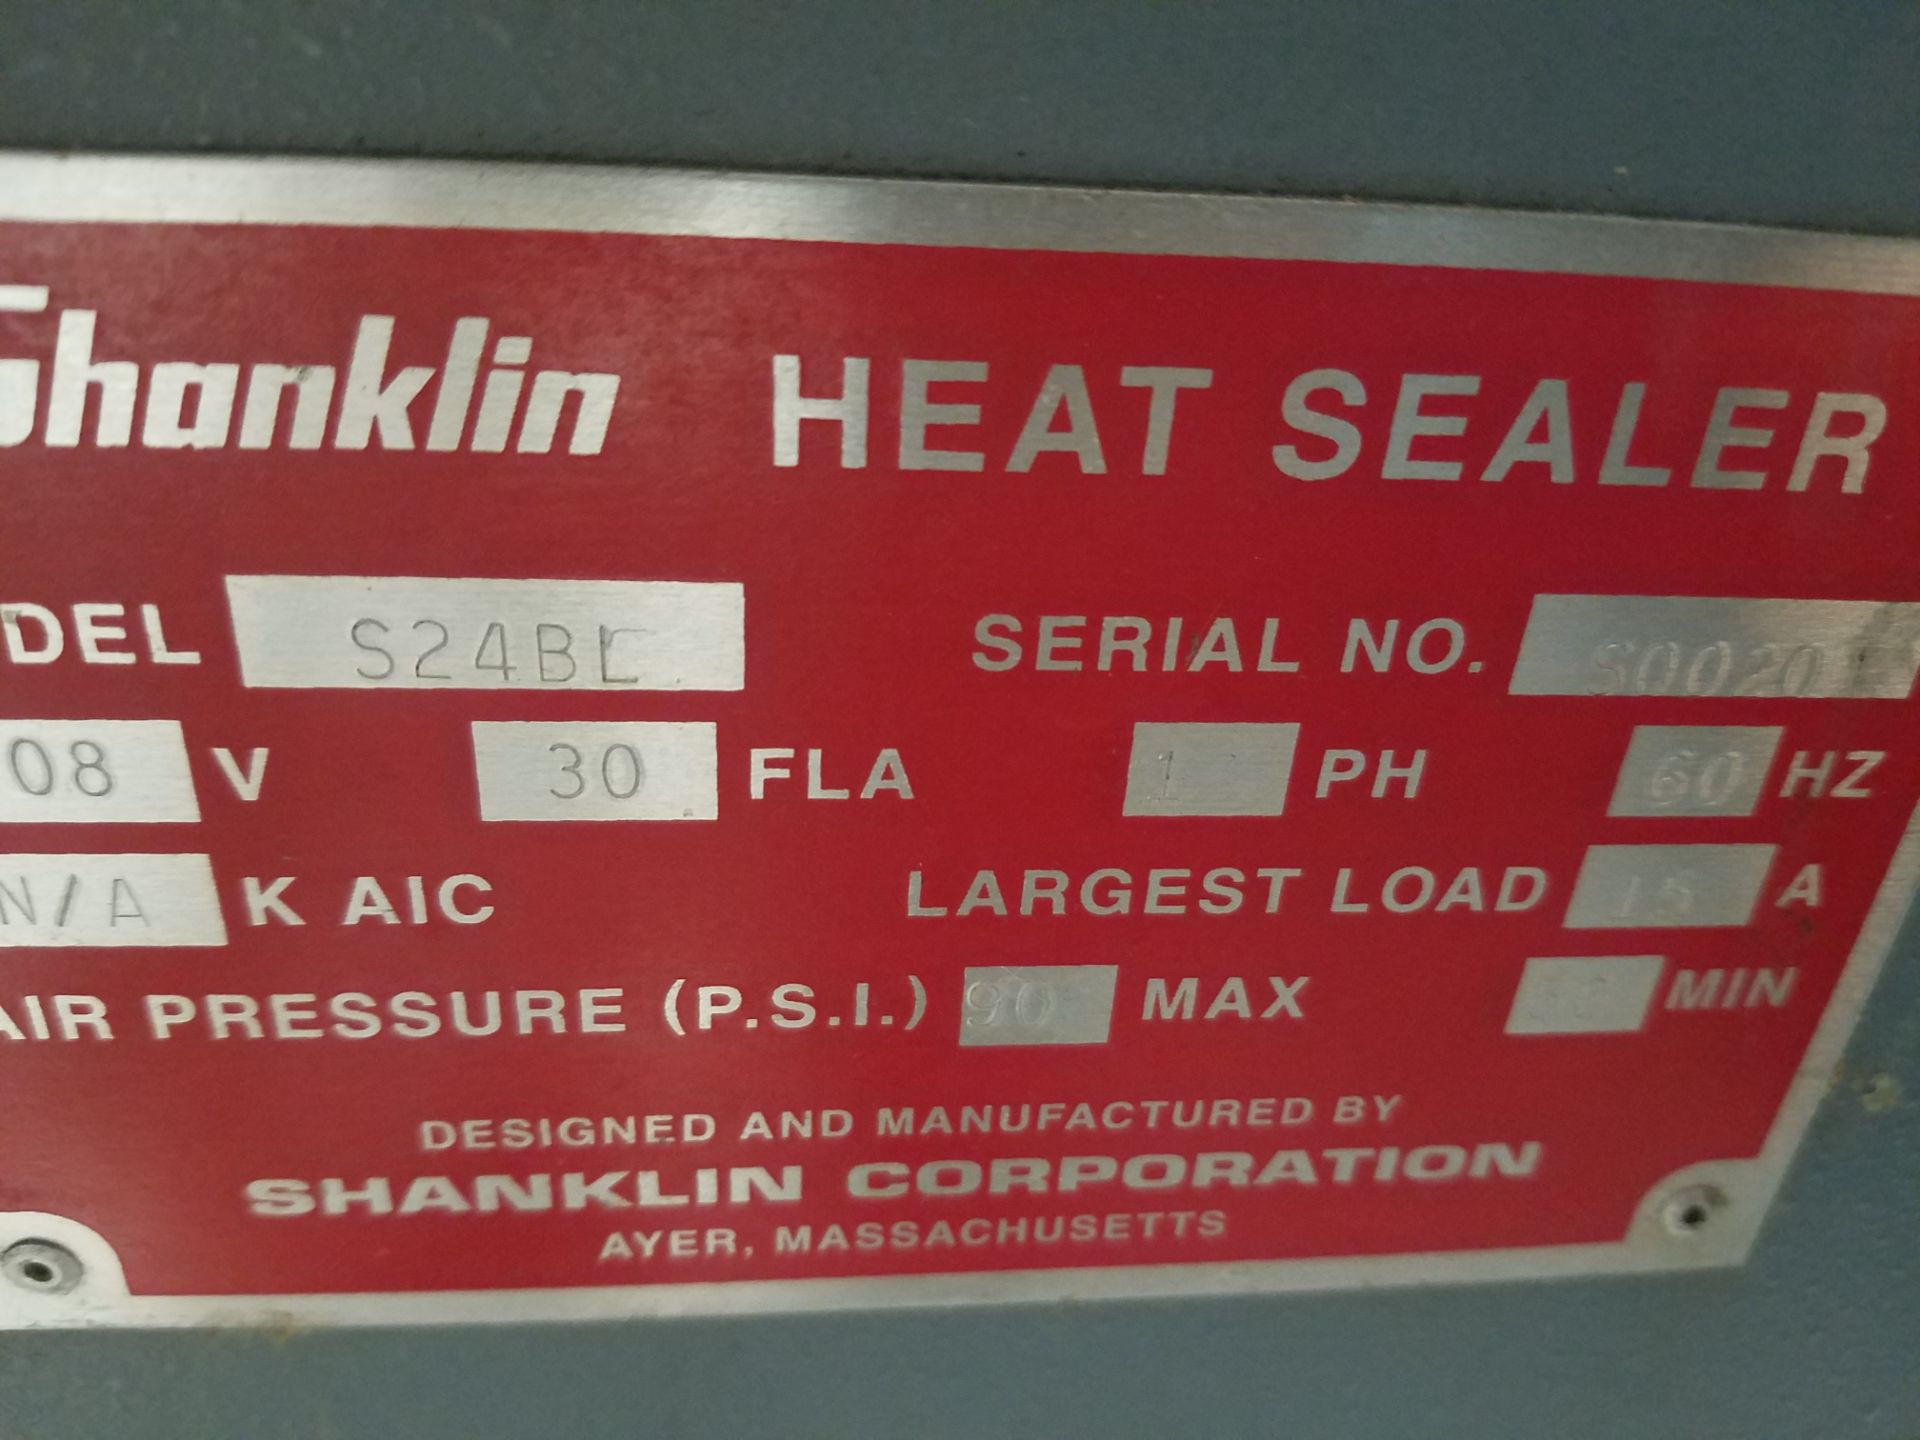 Shanklin T-7XL Heat Sealer, S/N 50020, Volt 208, Single Phase (Loading, Rigging & Site Management - Image 5 of 5